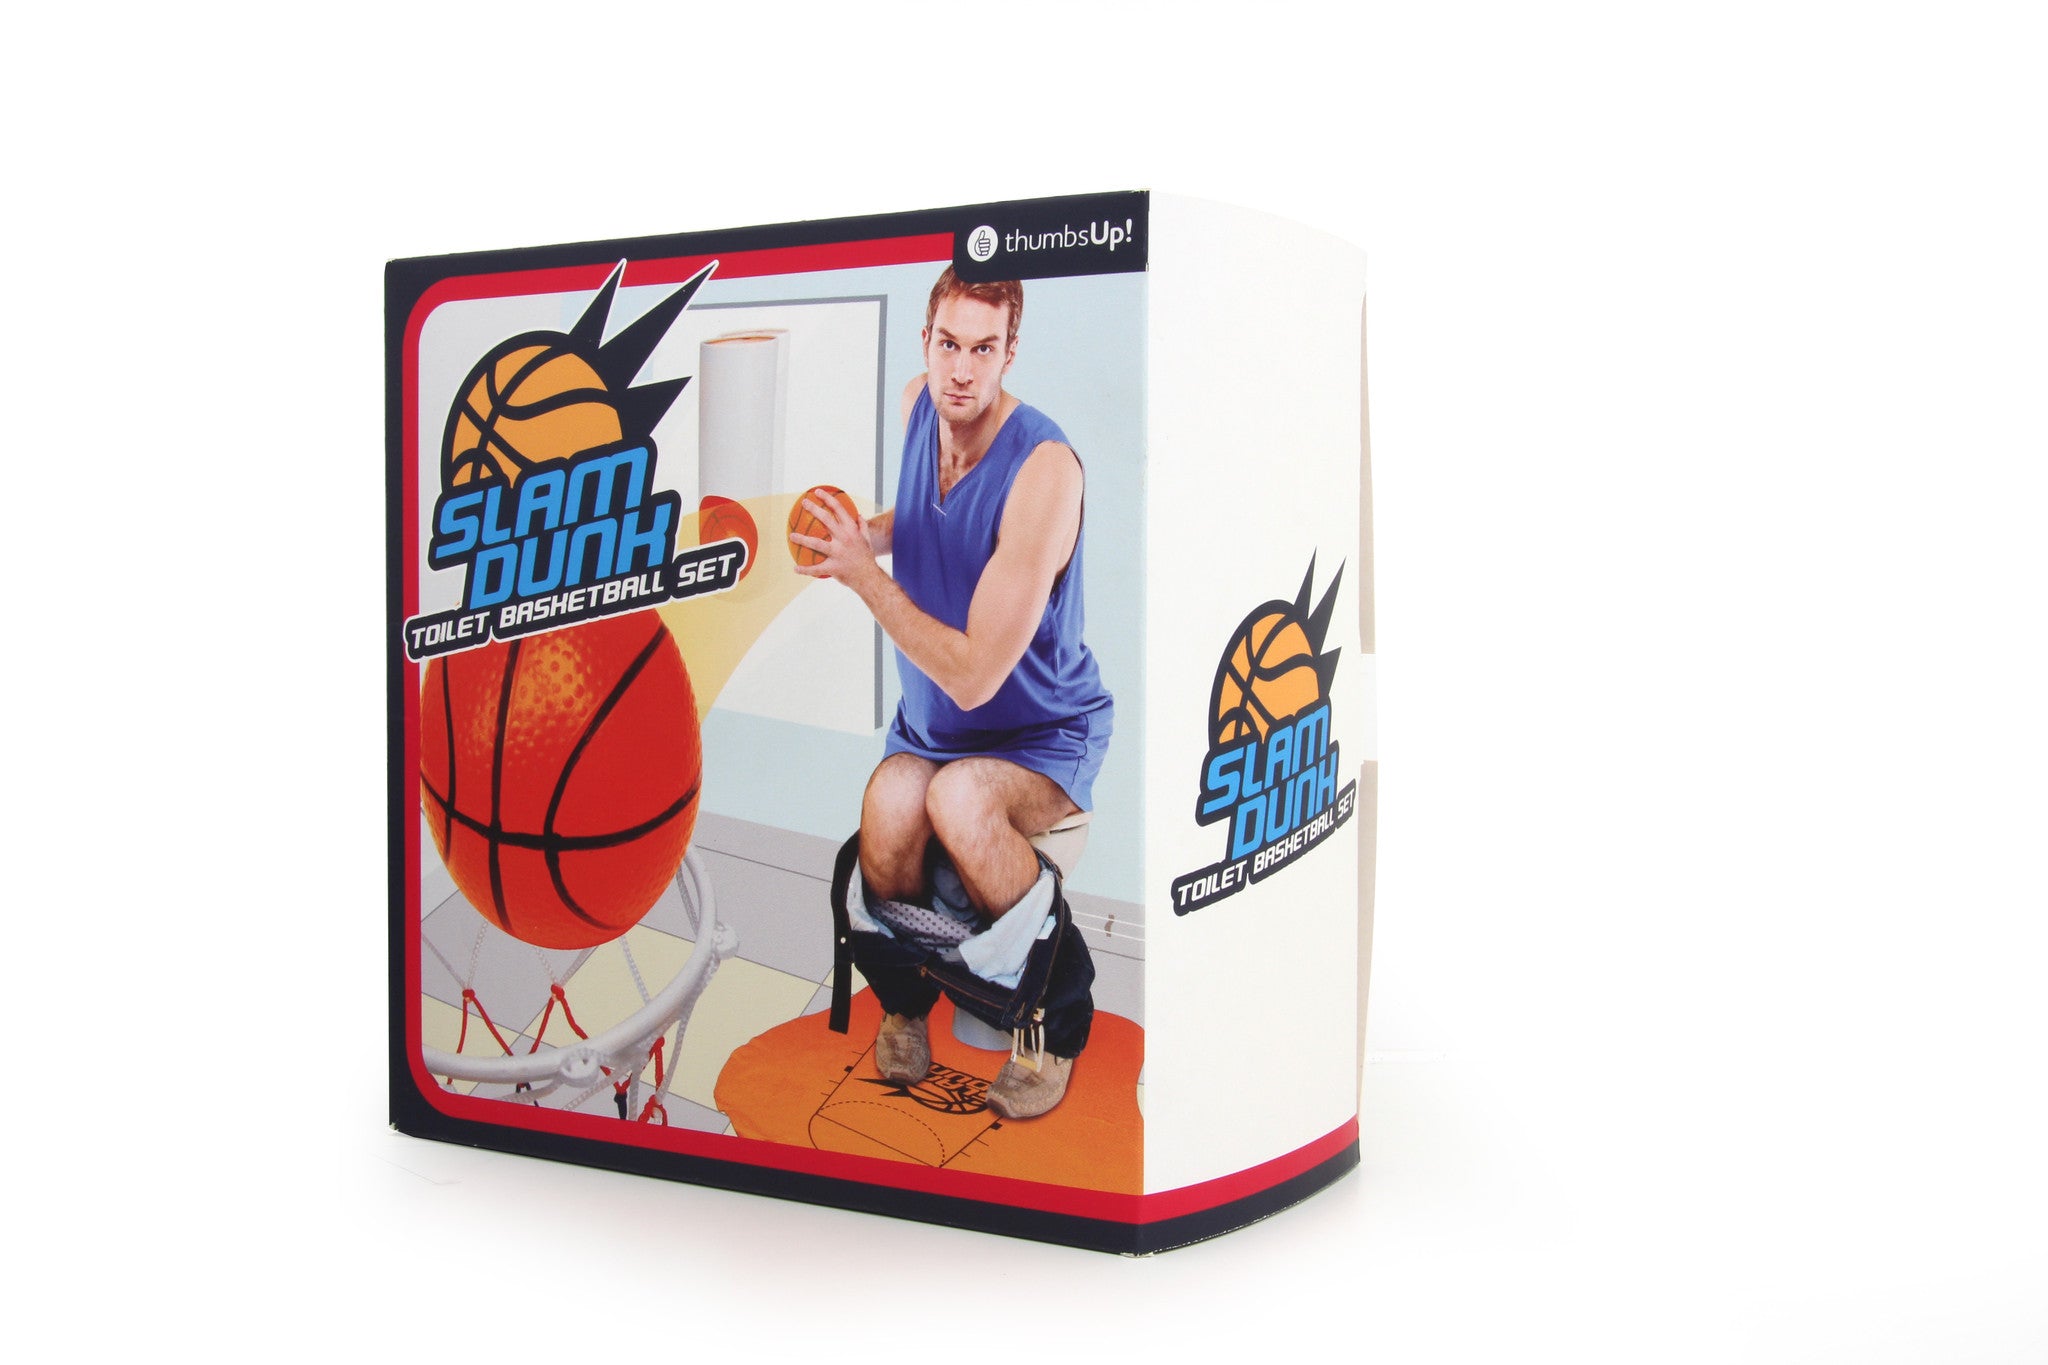 Slam Dunk Toilet Basketball